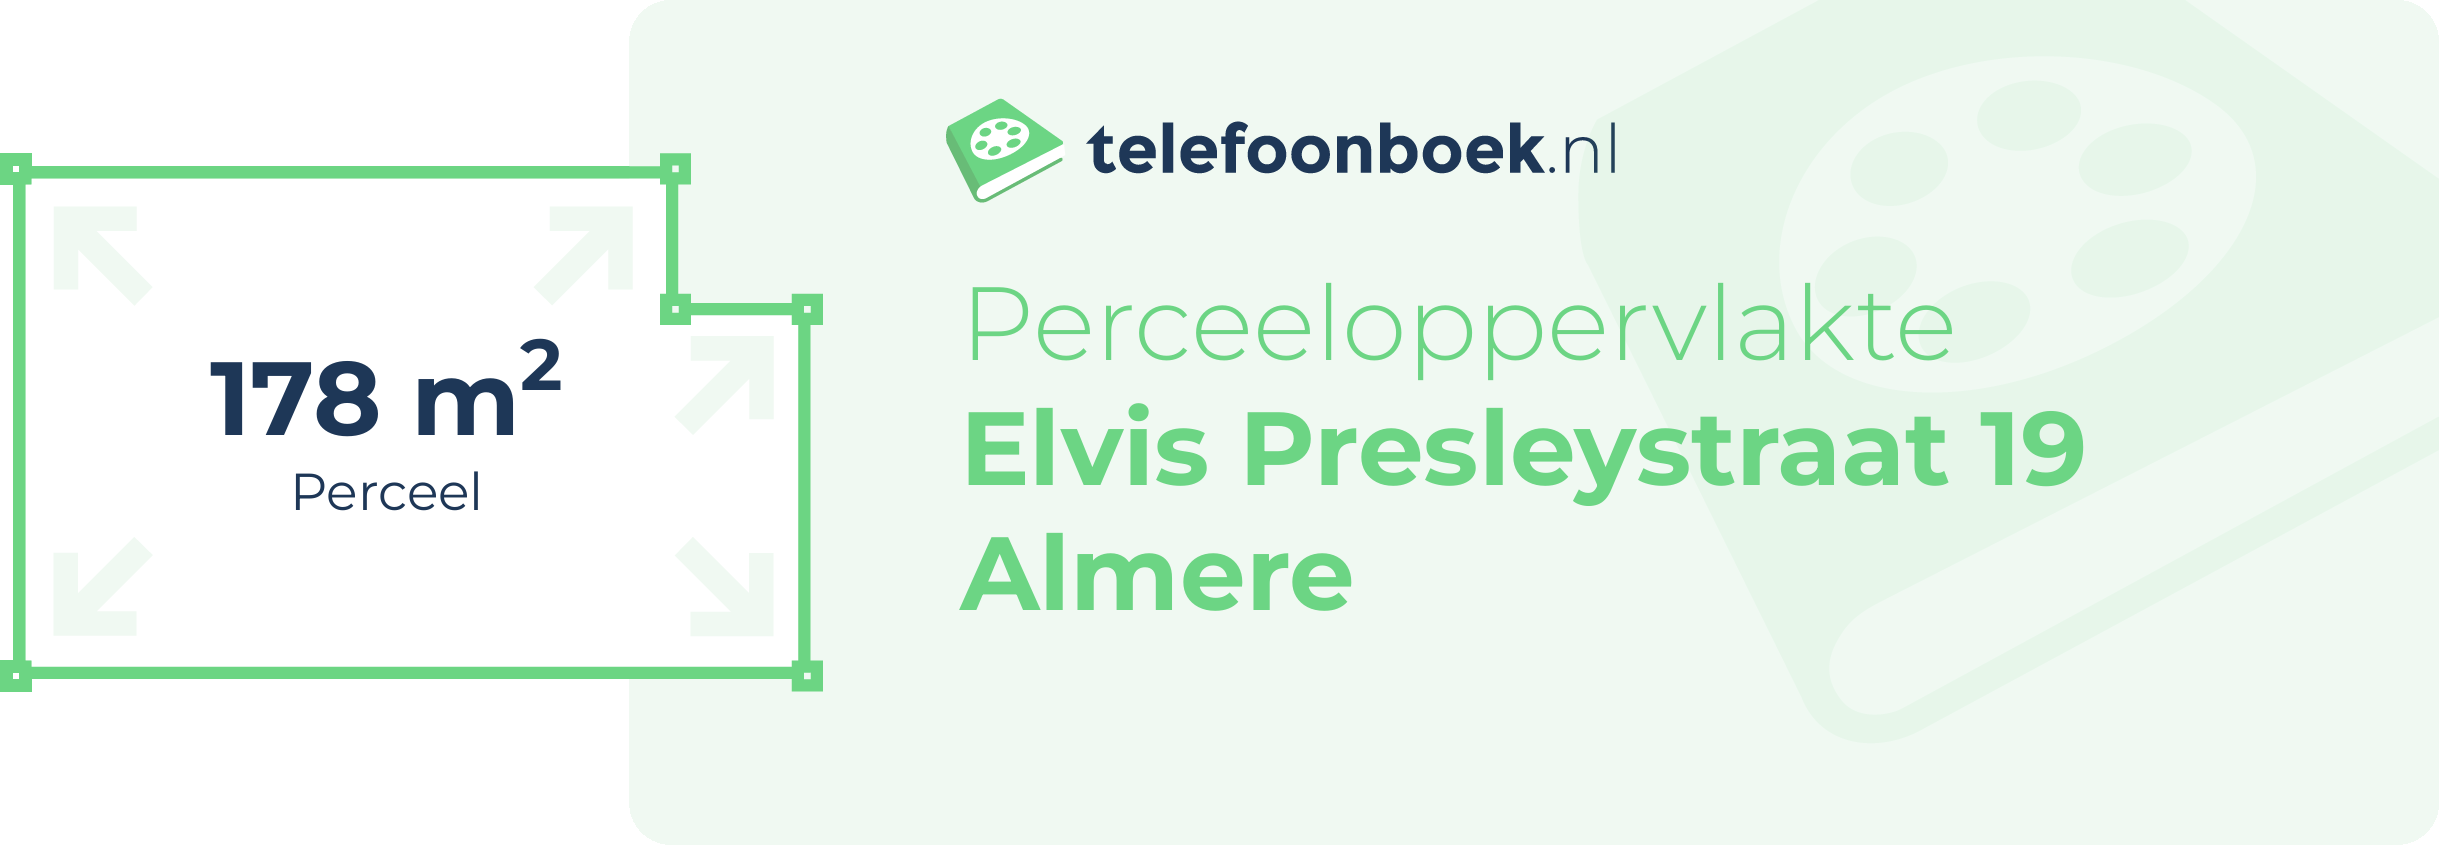 Perceeloppervlakte Elvis Presleystraat 19 Almere